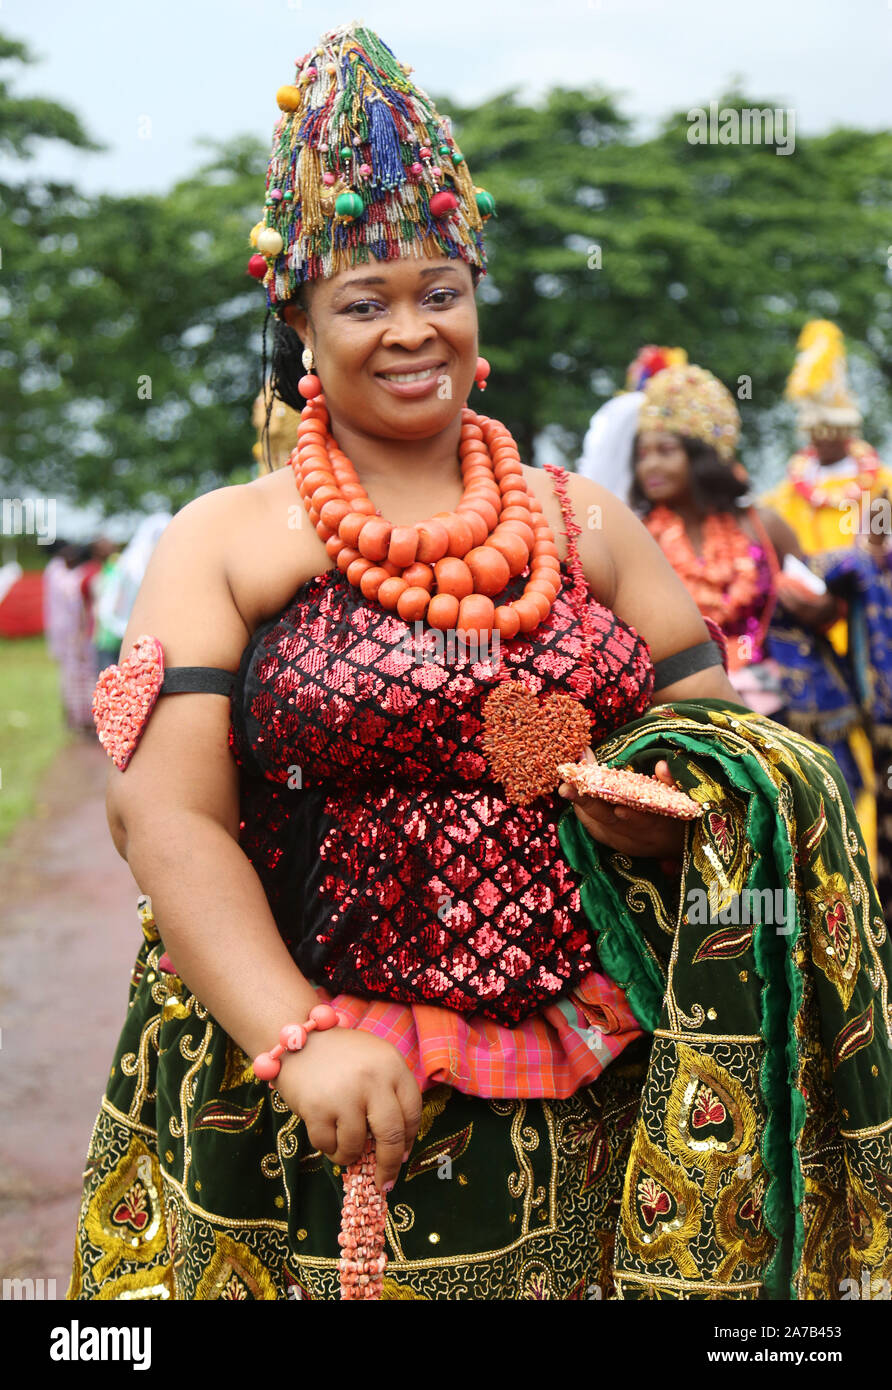 Kalabari lady of Rivers State présente la riche culture du Nigeria lors du Festival national des arts et de la culture (NAFEST) dans l'État d'Edo, au Nigeria. Banque D'Images